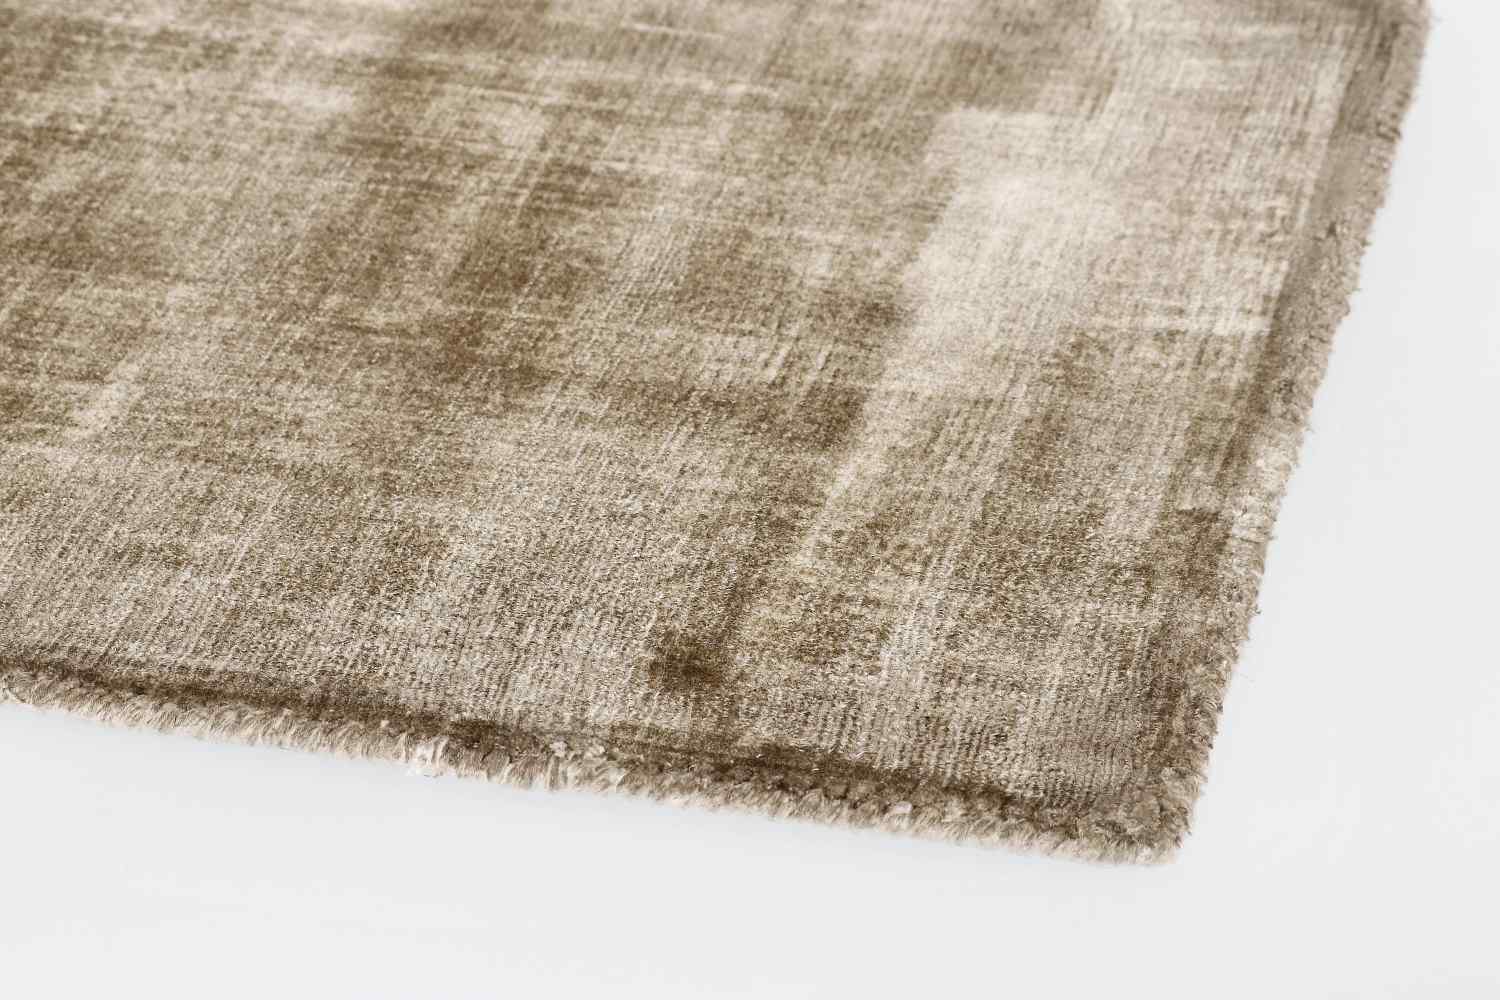 Der Teppich Rashmi überzeugt mit seinem modernen Design. Gefertigt wurde die Vorderseite aus Viskose und die Rückseite aus Baumwolle. Der Teppich besitzt eine braunen Farbton und die Maße von 140x200 cm.